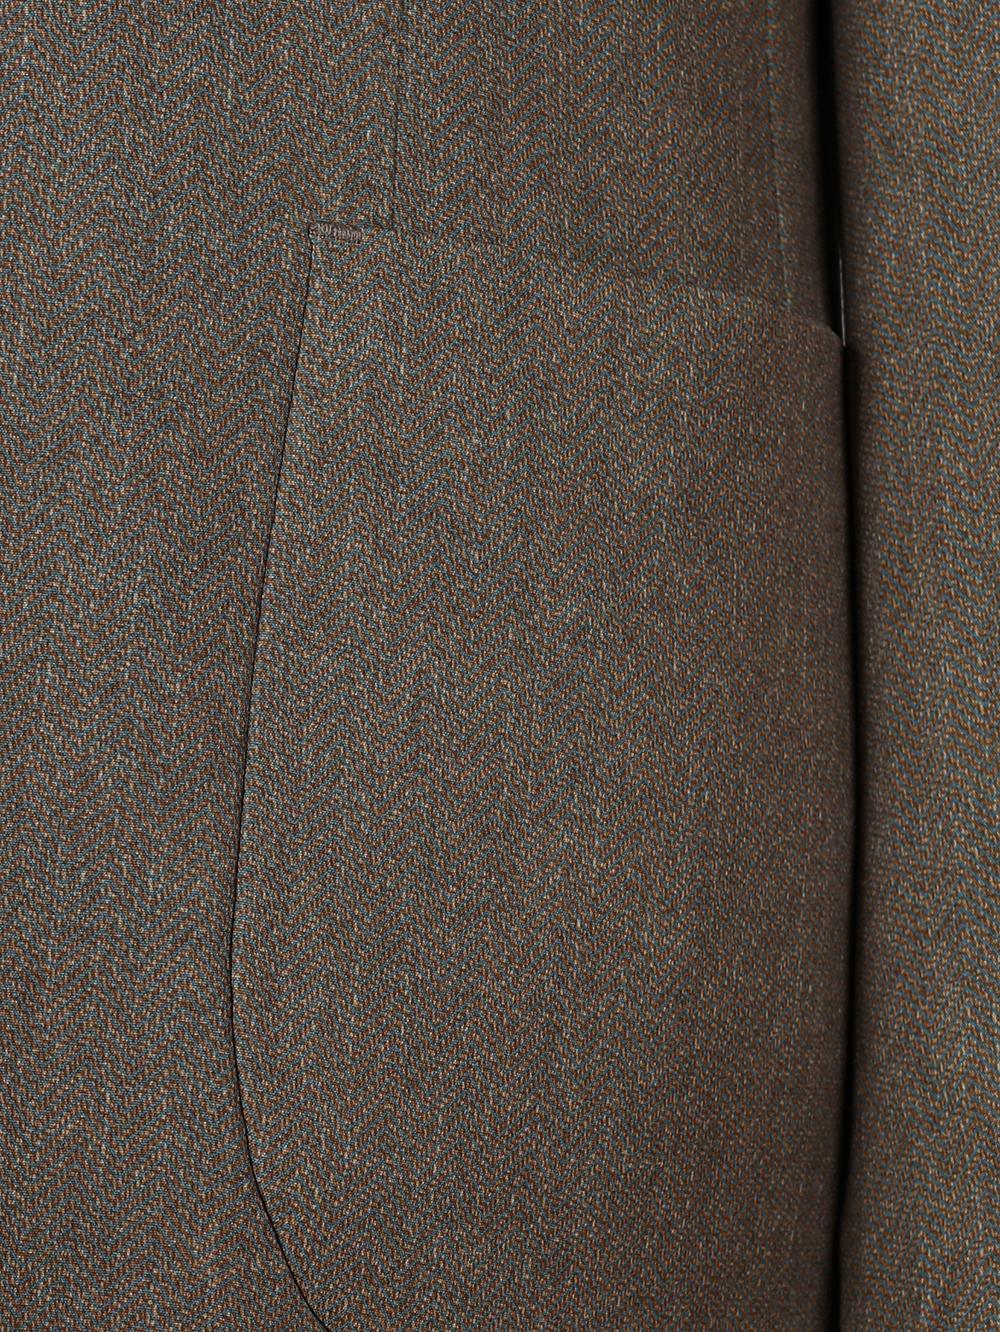 Caspian Brown Set Blazer Linen Suit